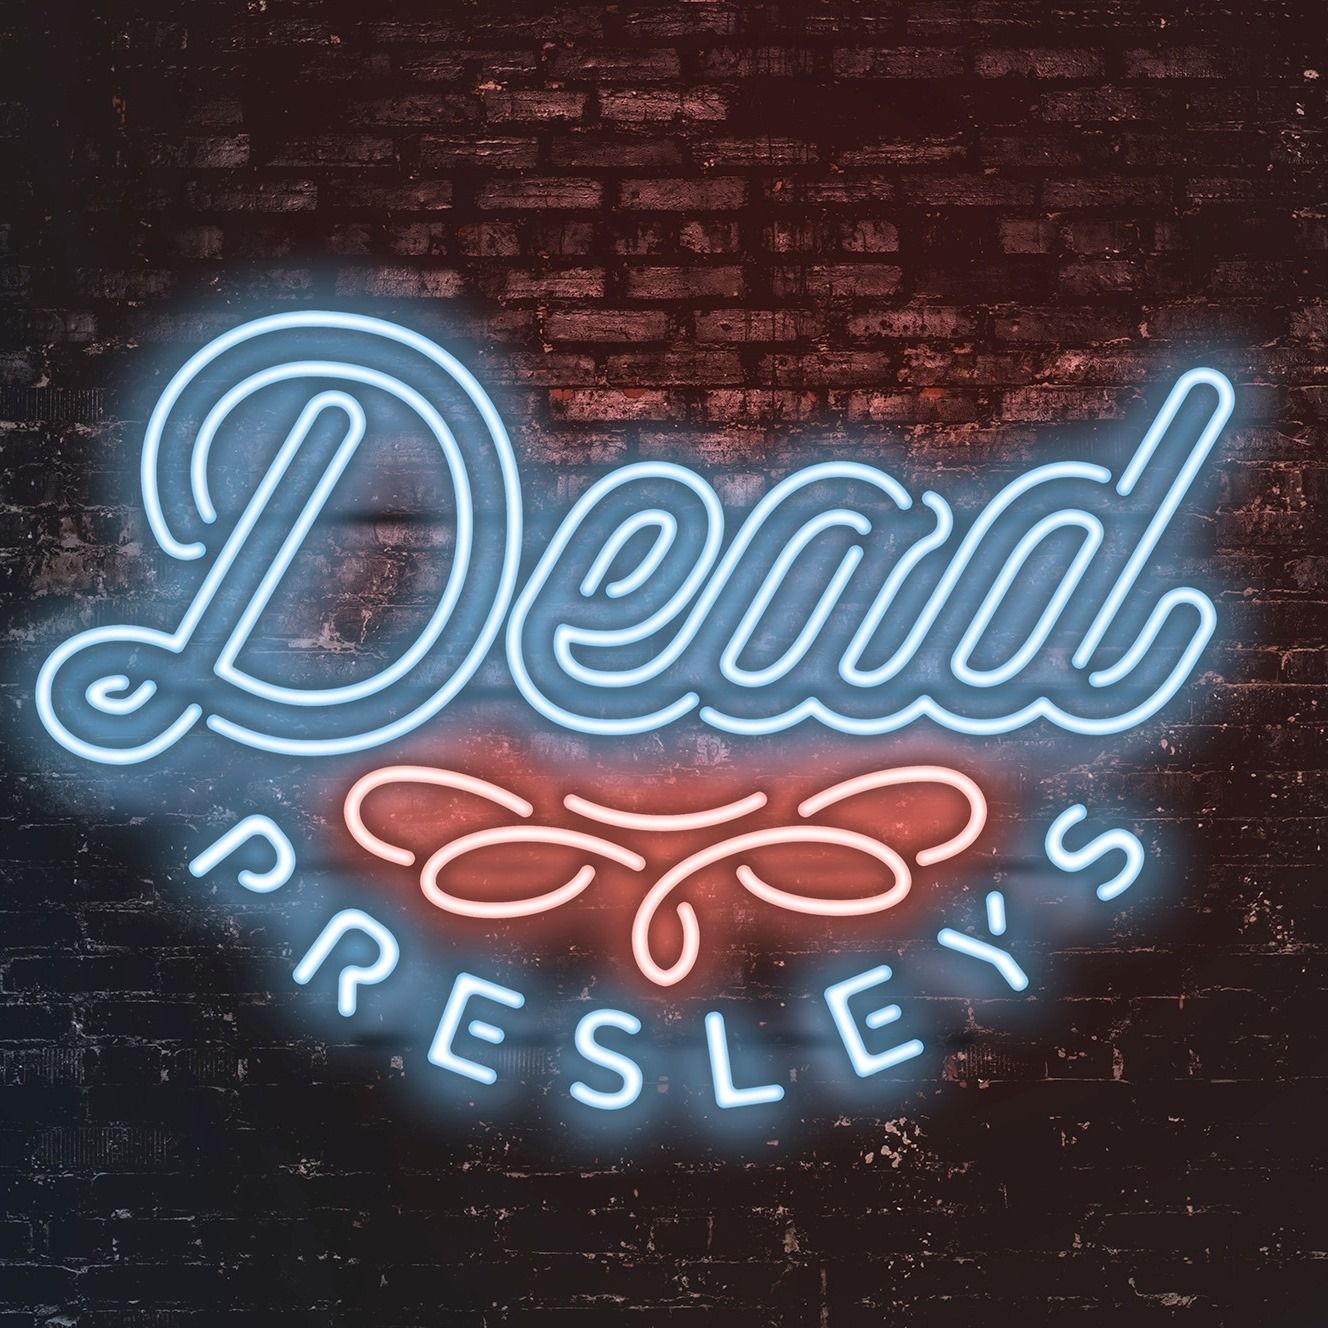 Dead Presleys